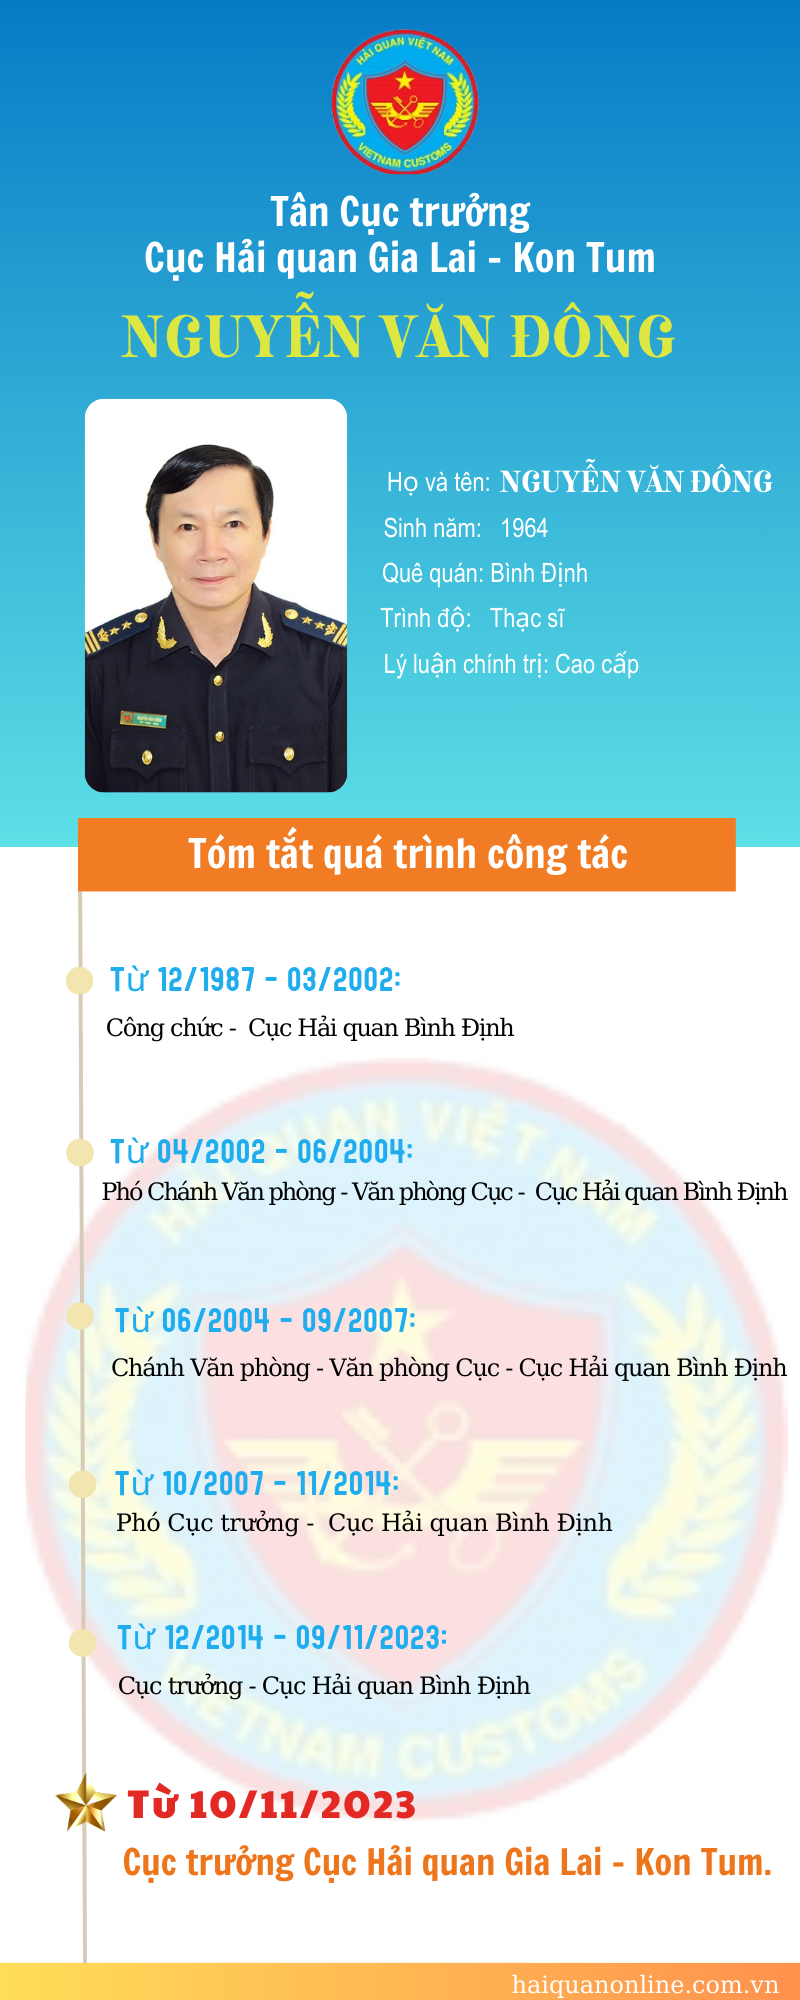 Inforgraphic: Quá trình công tác của tân Cục trưởng Cục Hải quan Gia Lai - Kon Tum Nguyễn Văn Đông